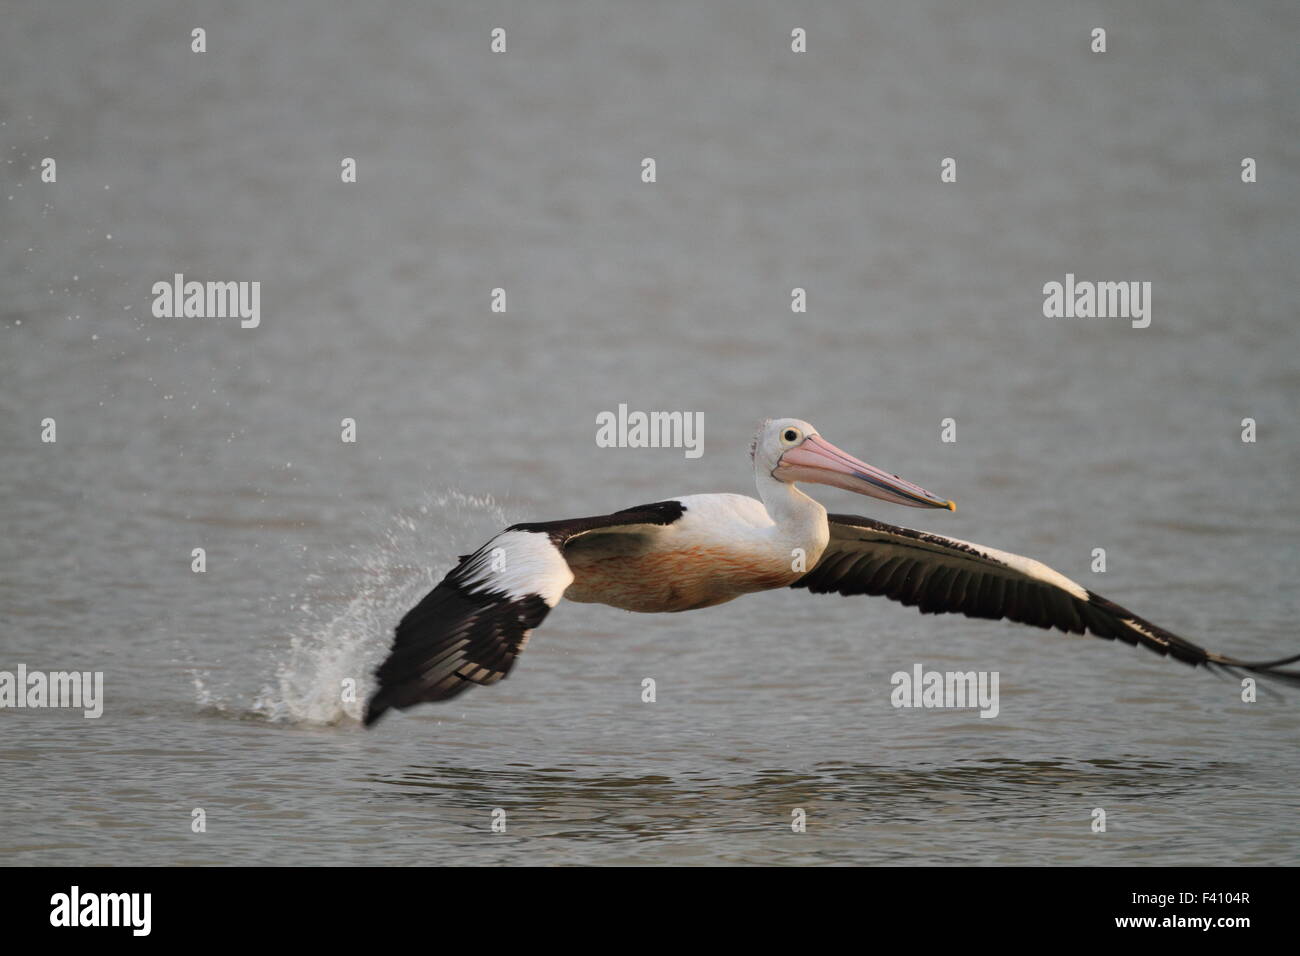 Australian pelican (Pelecanus conspicillatus) in Cairns, Australia Stock Photo